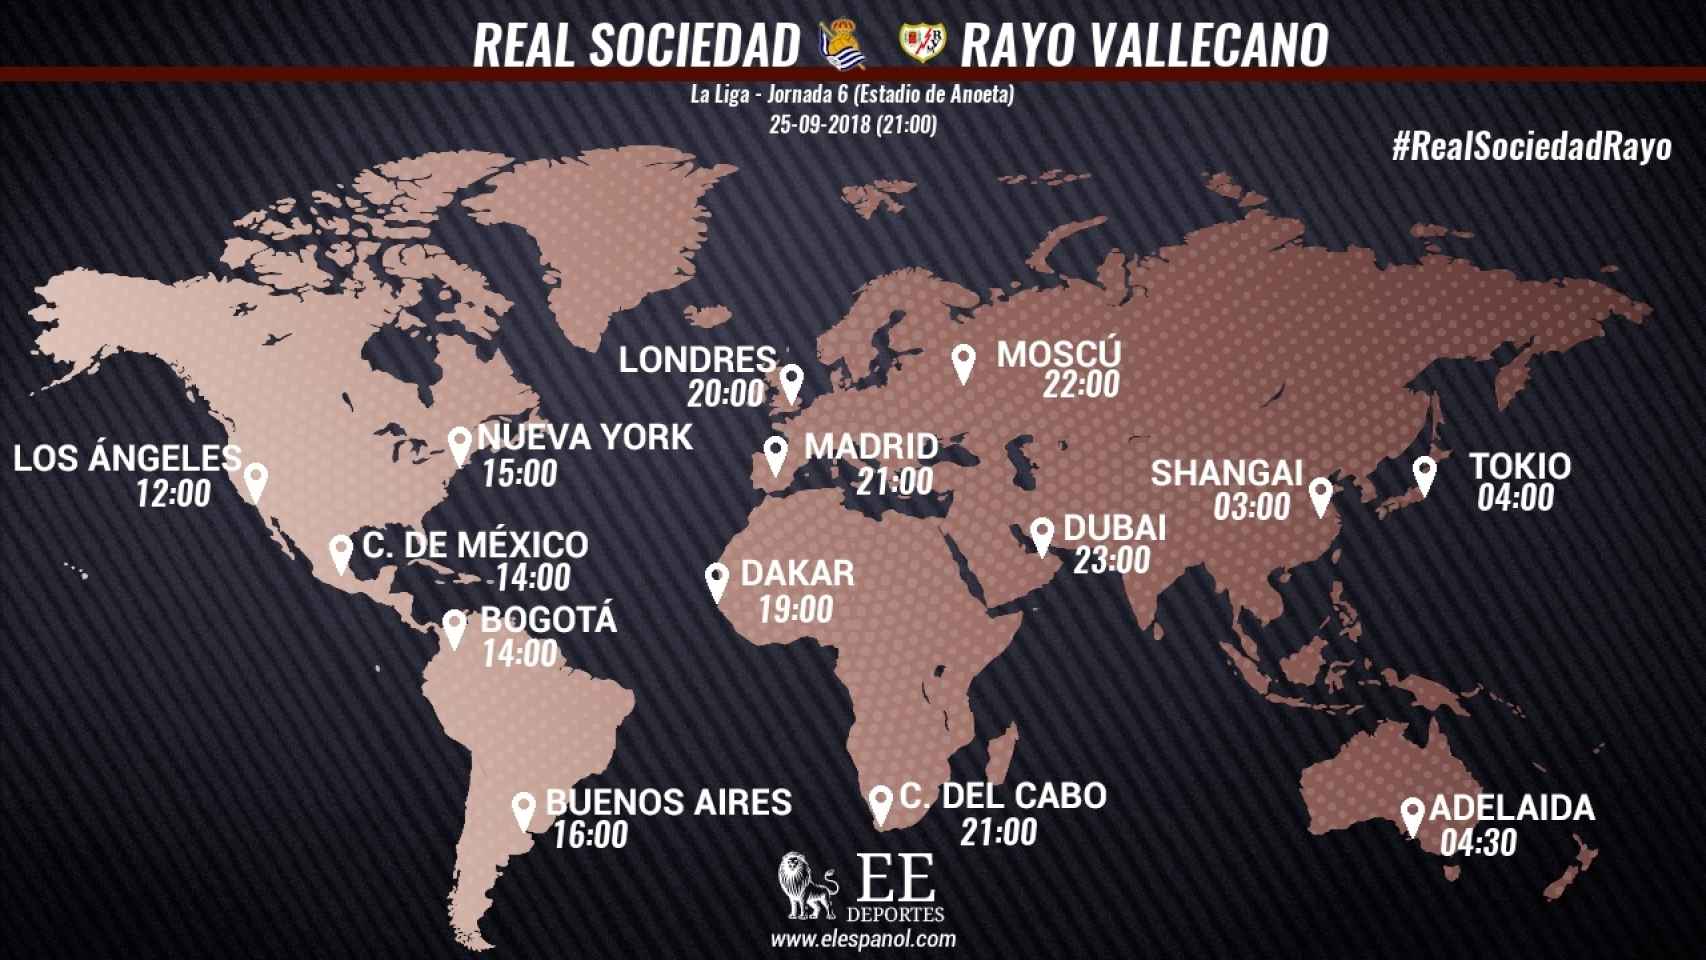 Horario del Real Sociedad - Rayo Vallecano